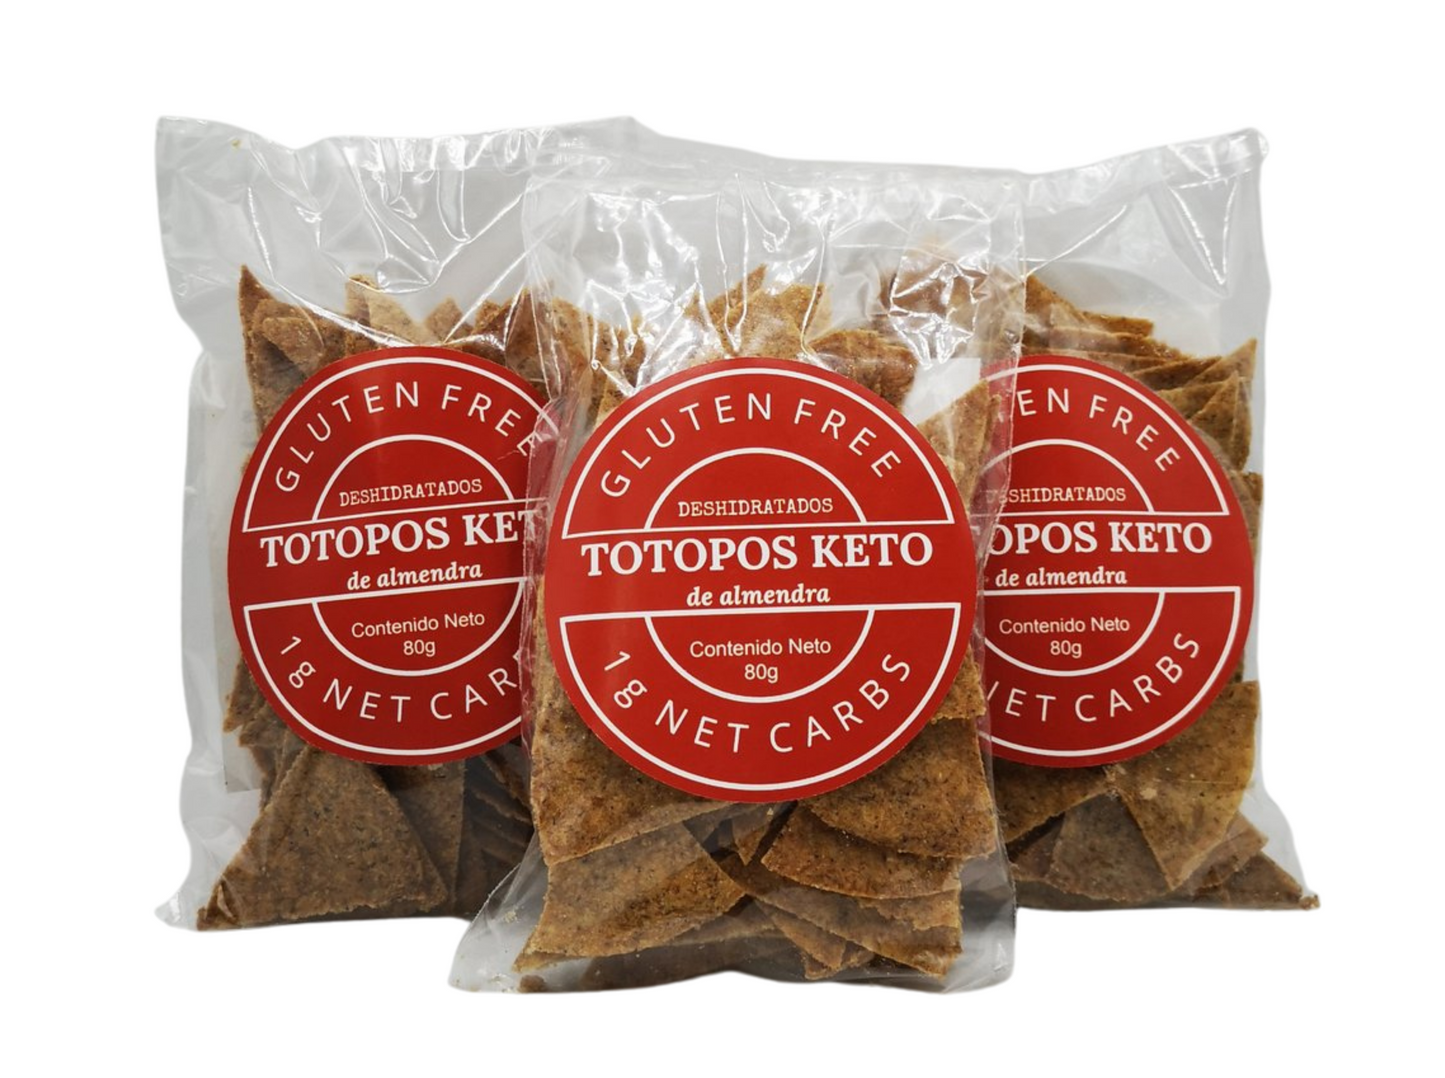 Totopos Keto